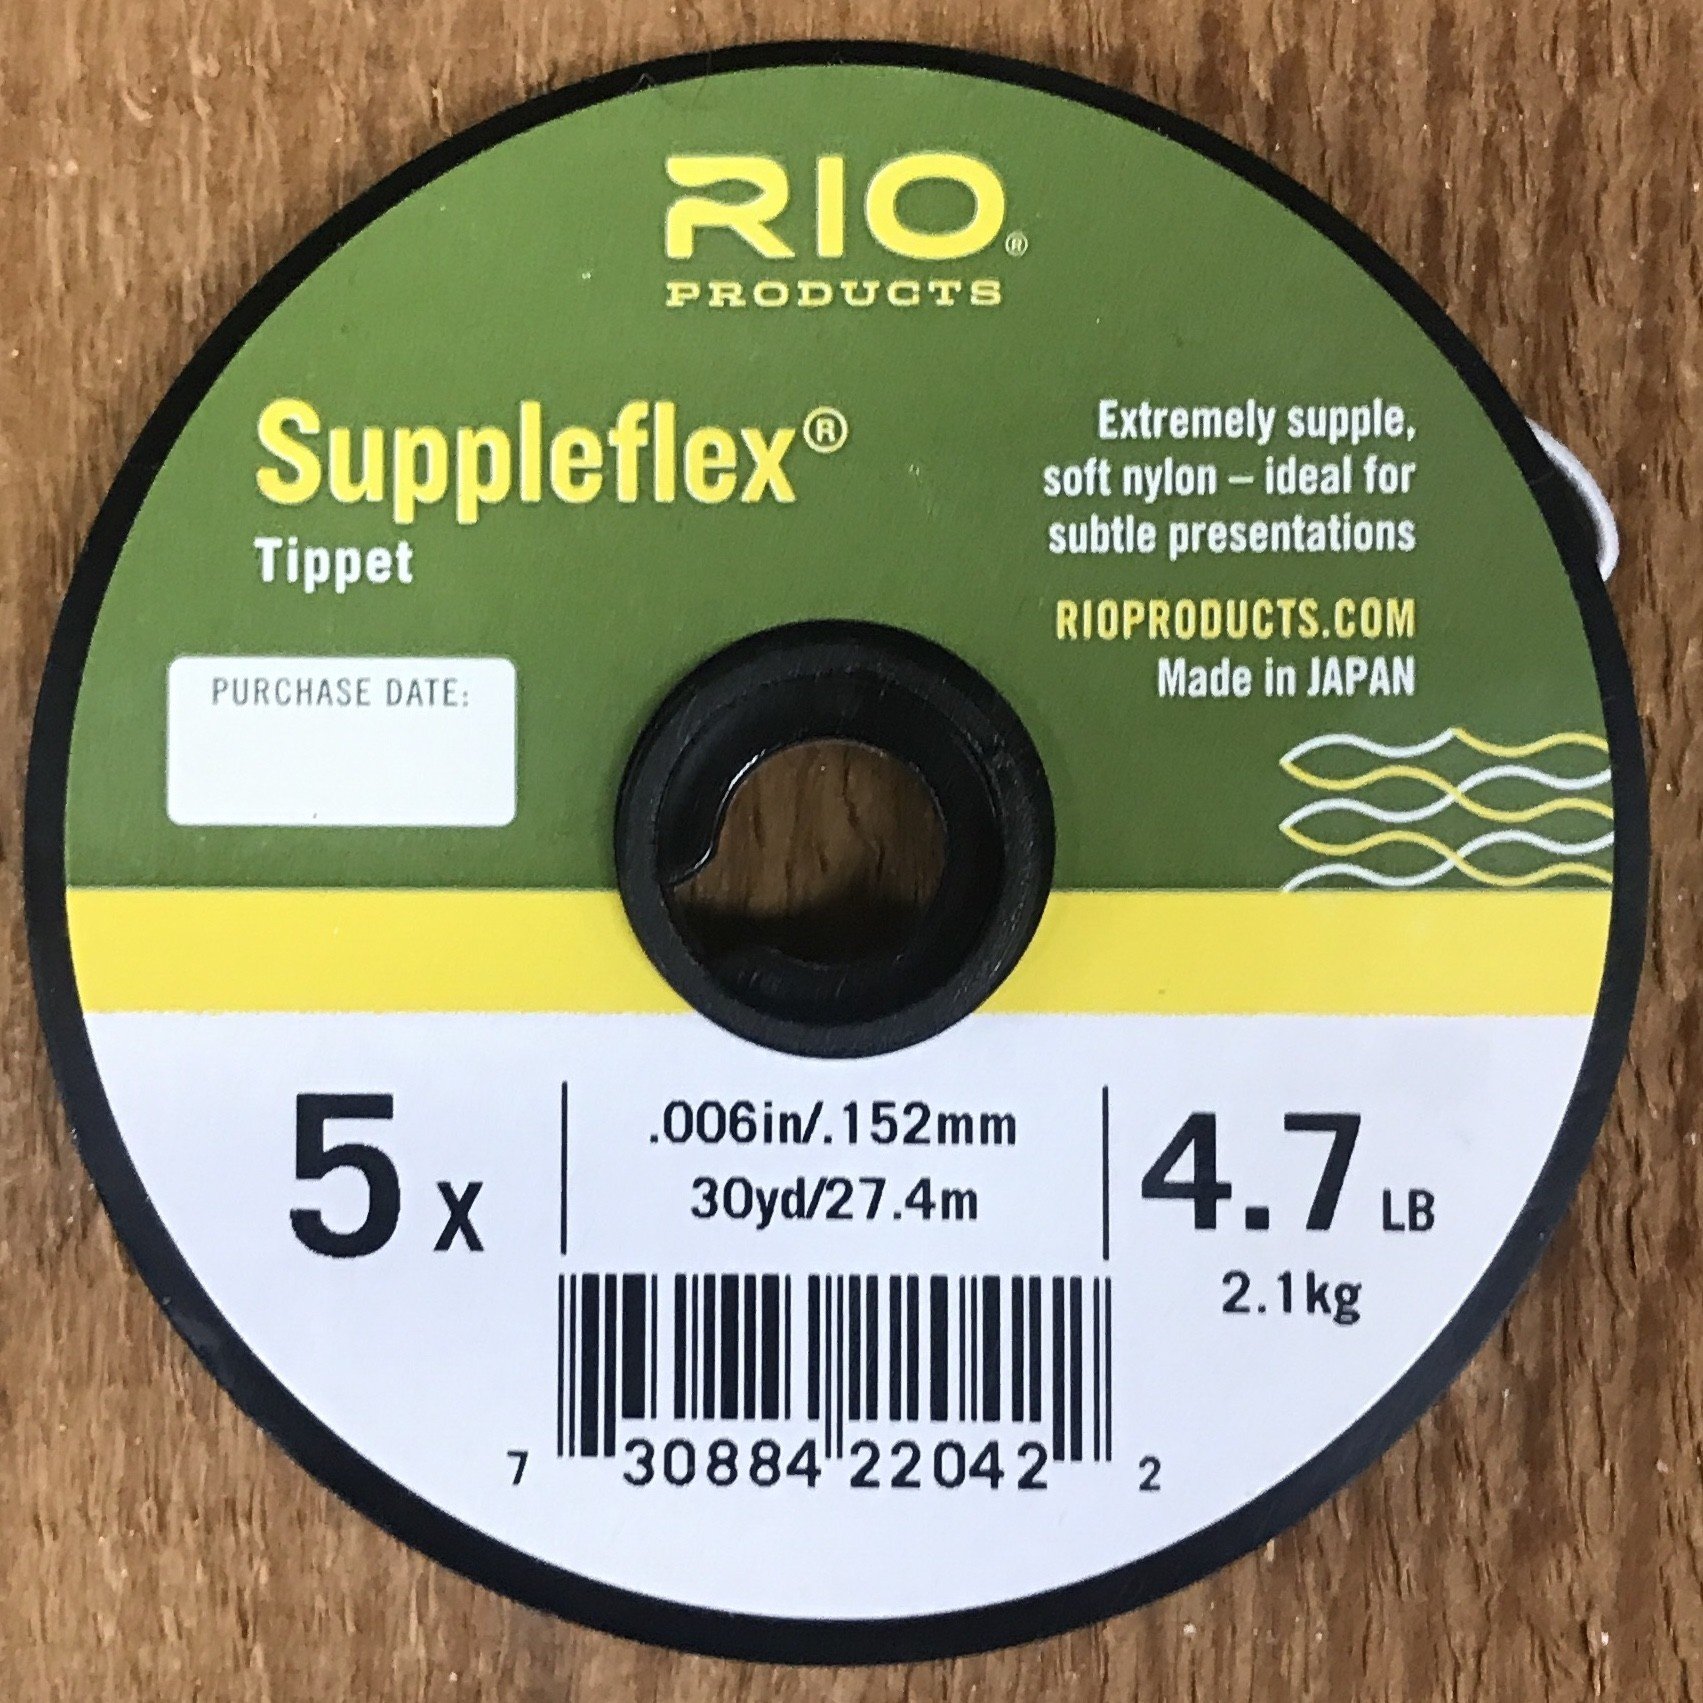 Rio Suppleflex Tippet 30yd Spool